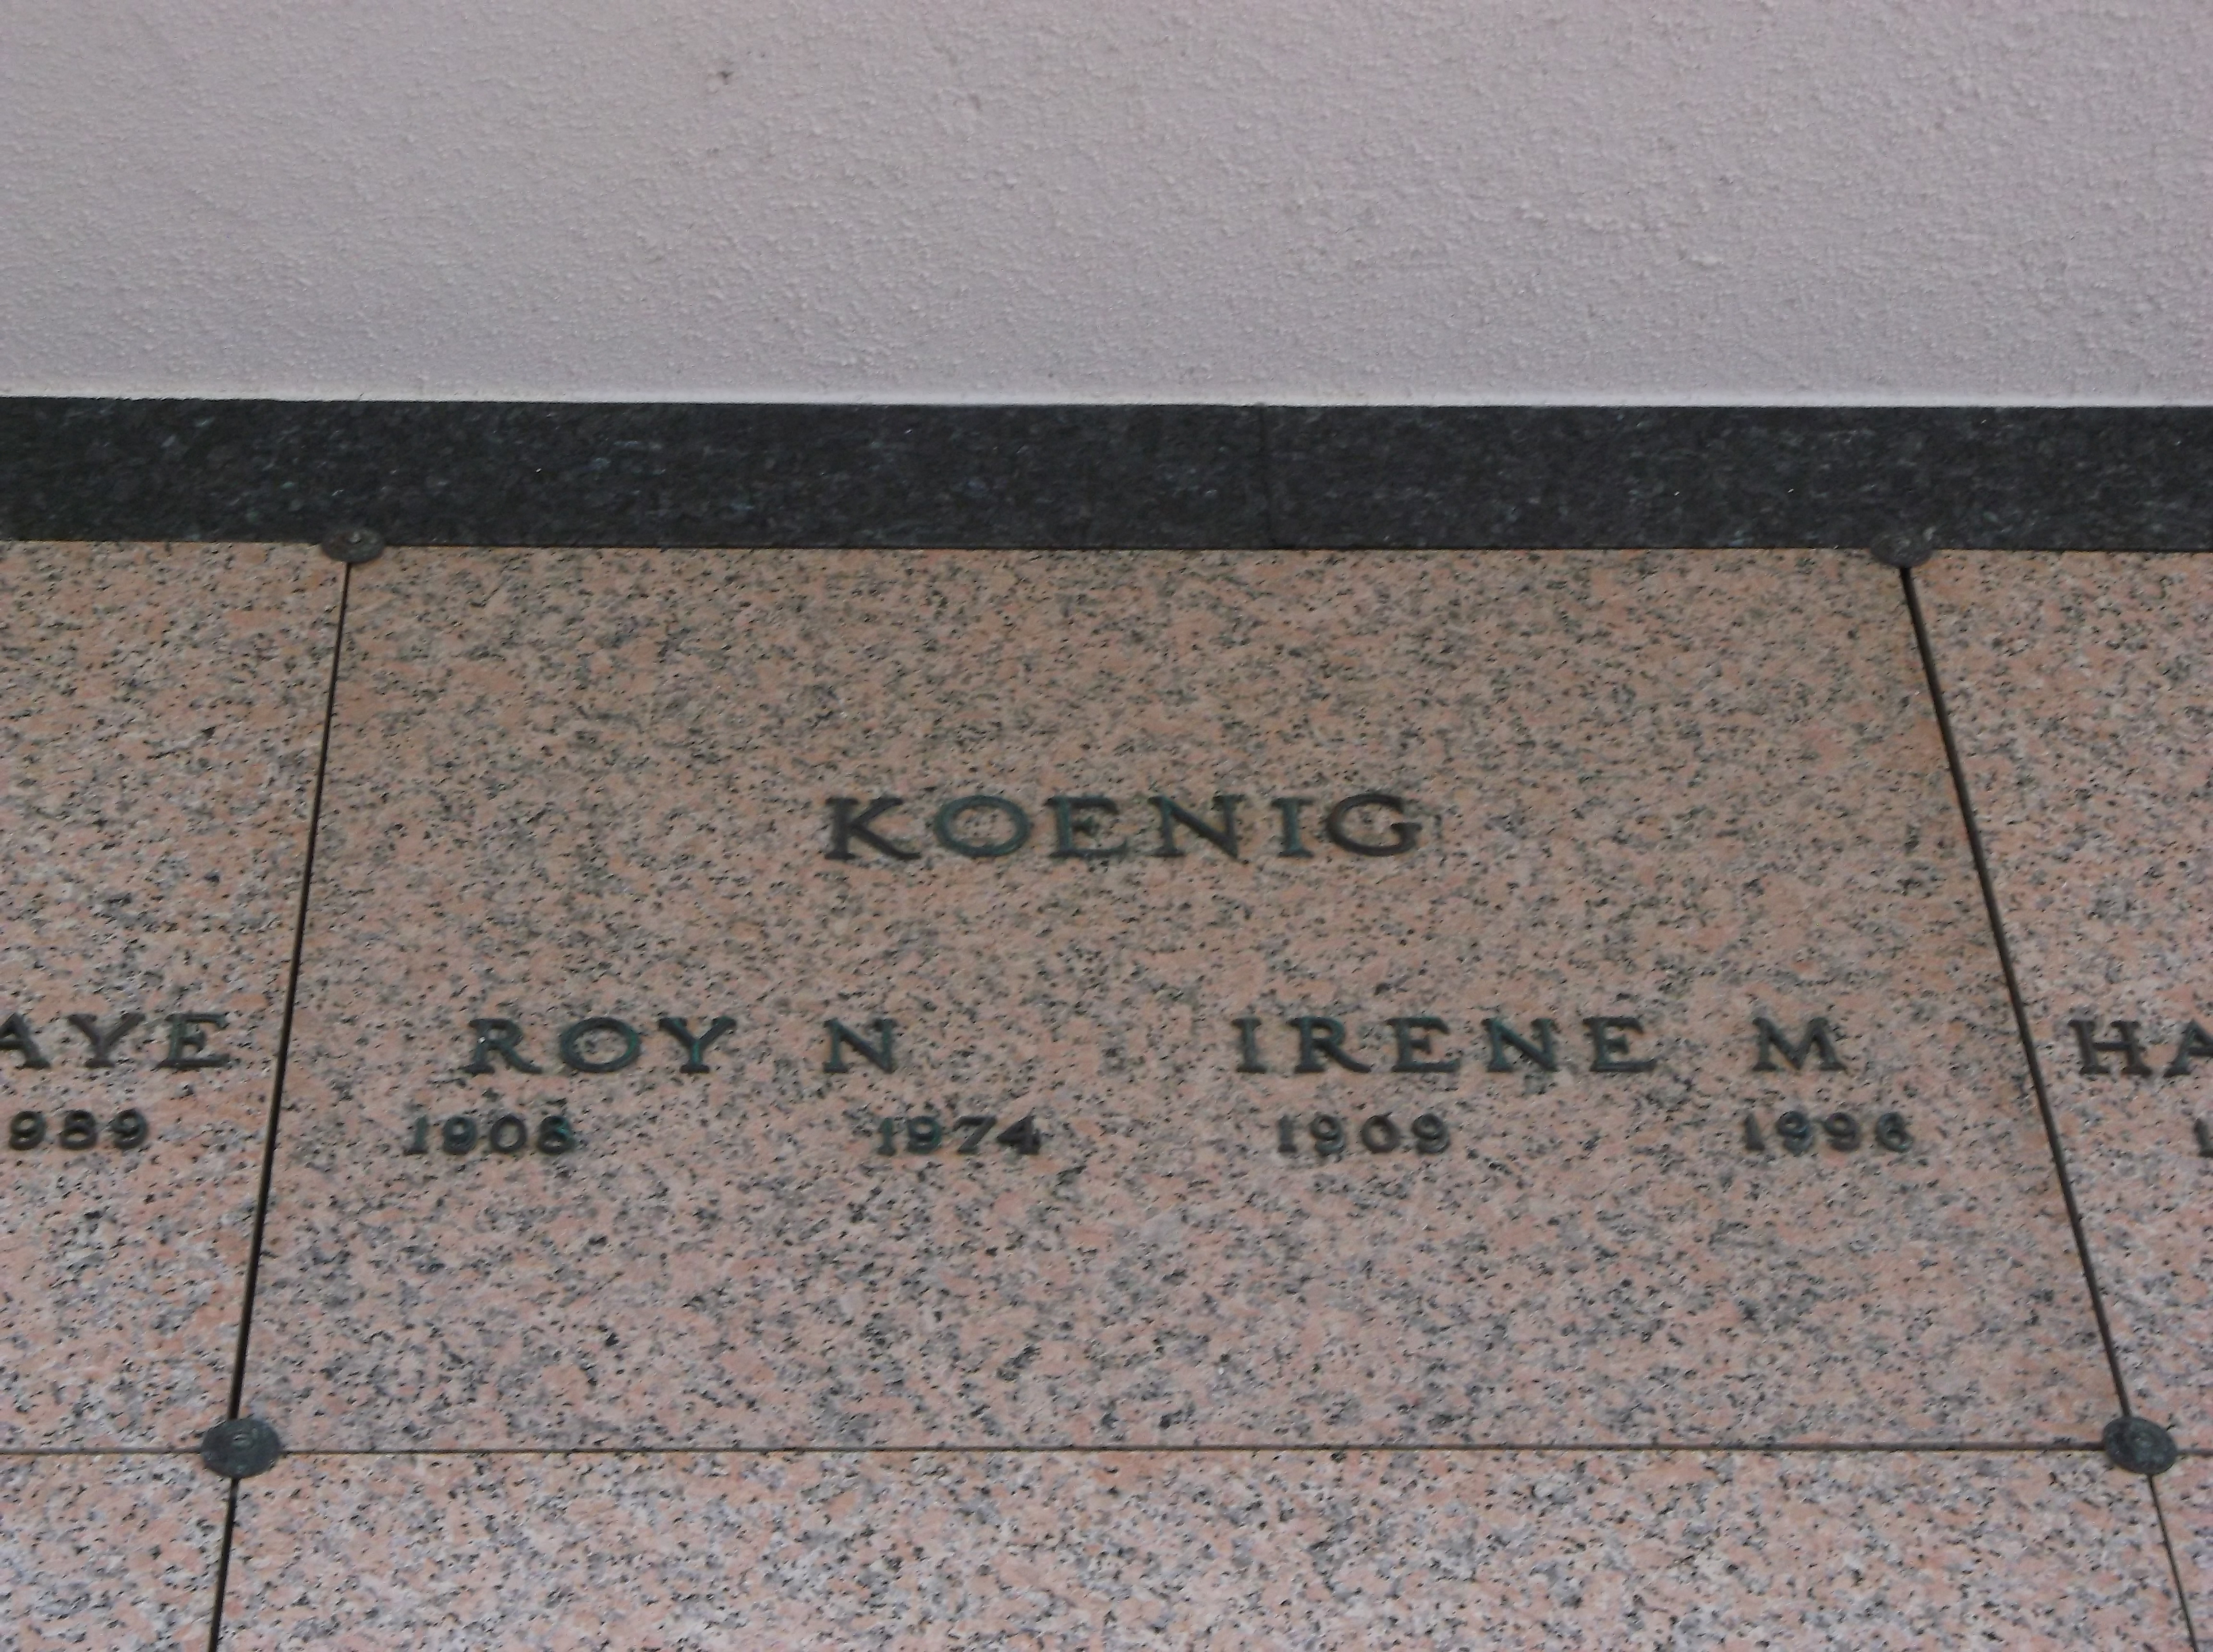 Irene M Koenig